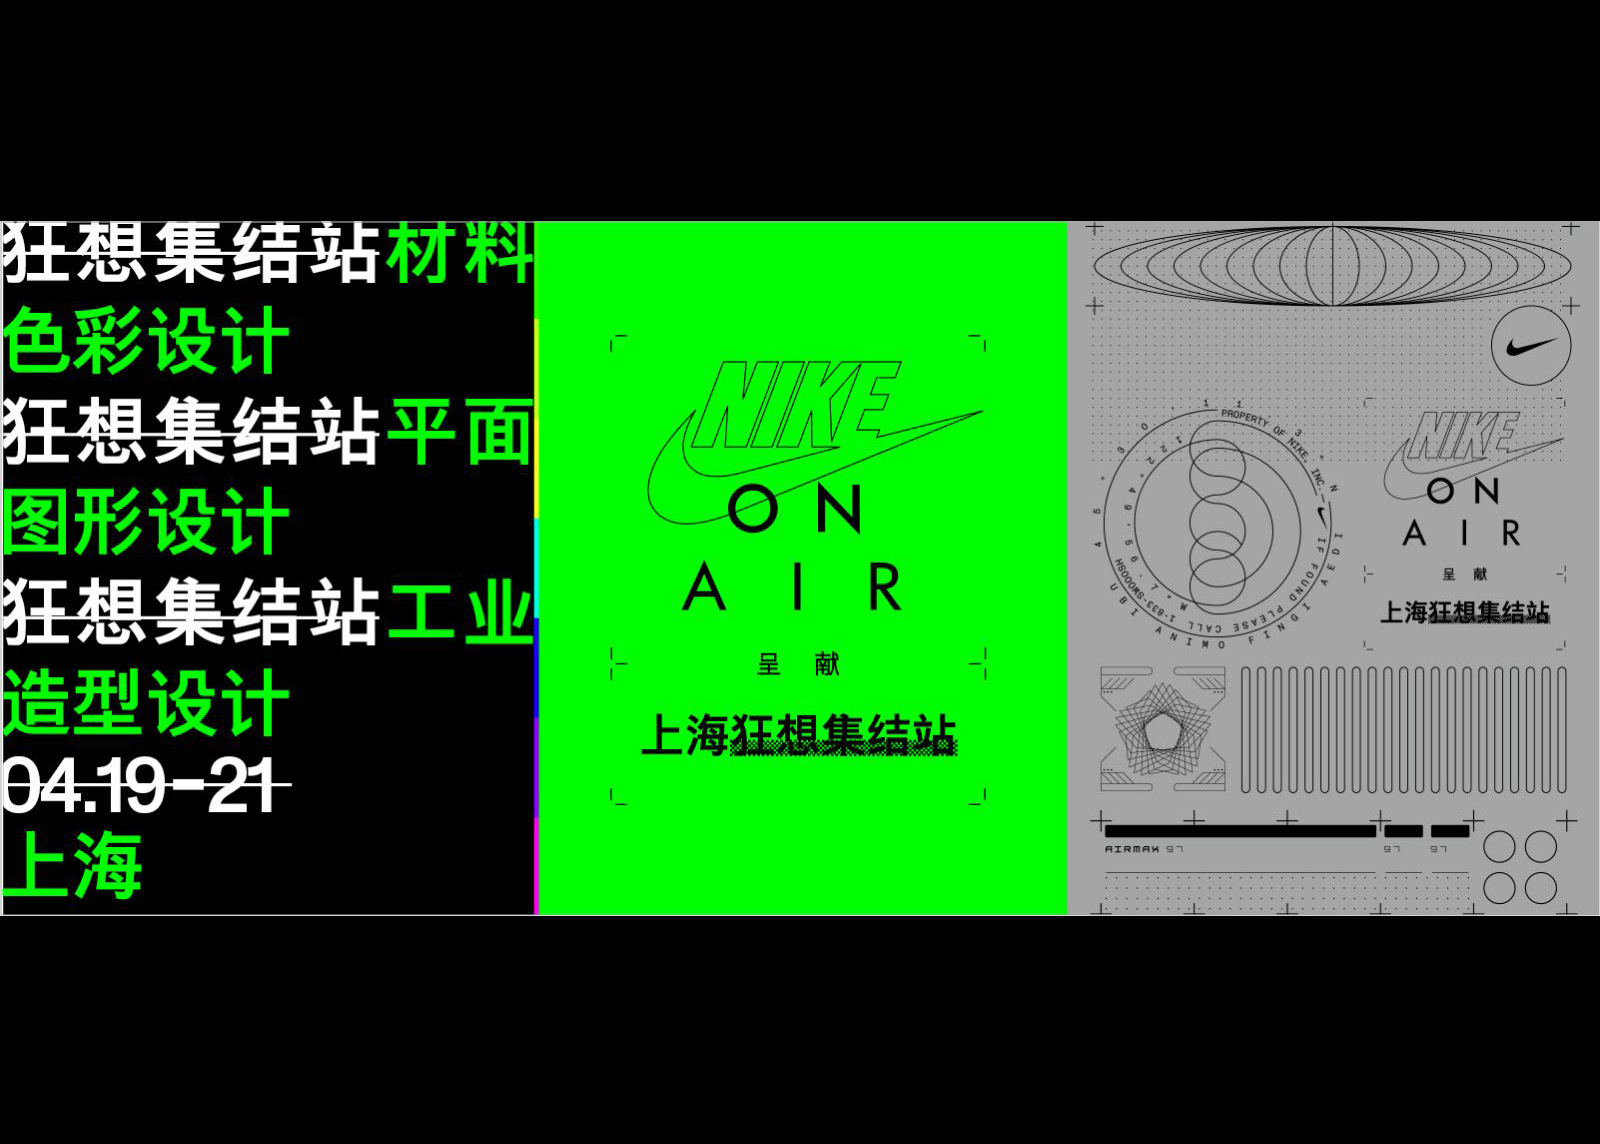 狂想在这里壮大：Nike On Air 呈献“狂想”系列活动